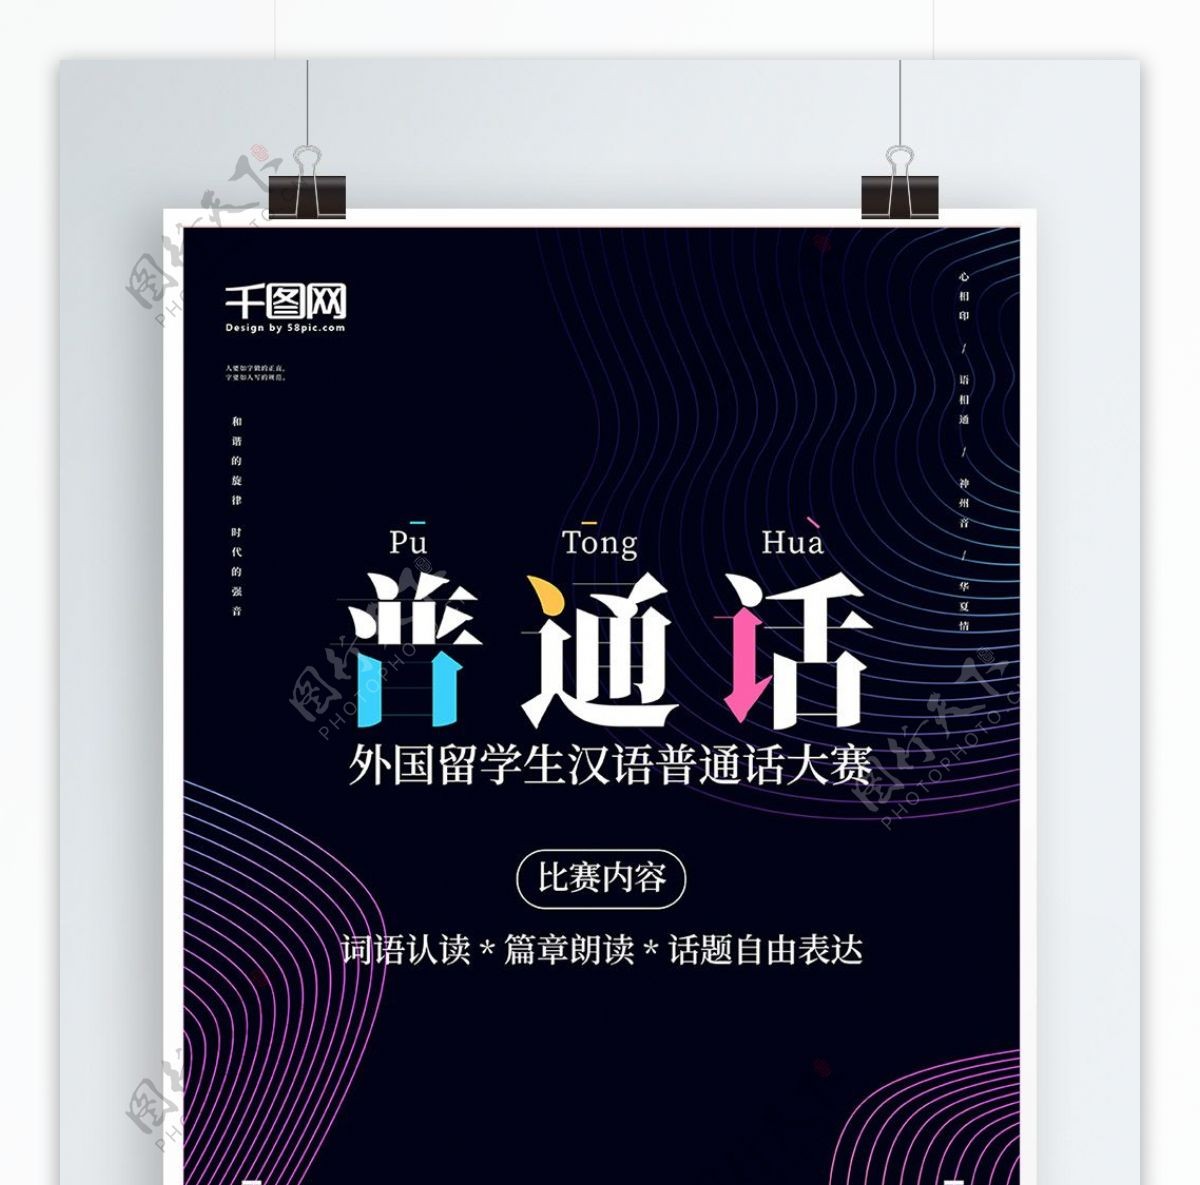 原创外国留学生汉语普通话比赛海报